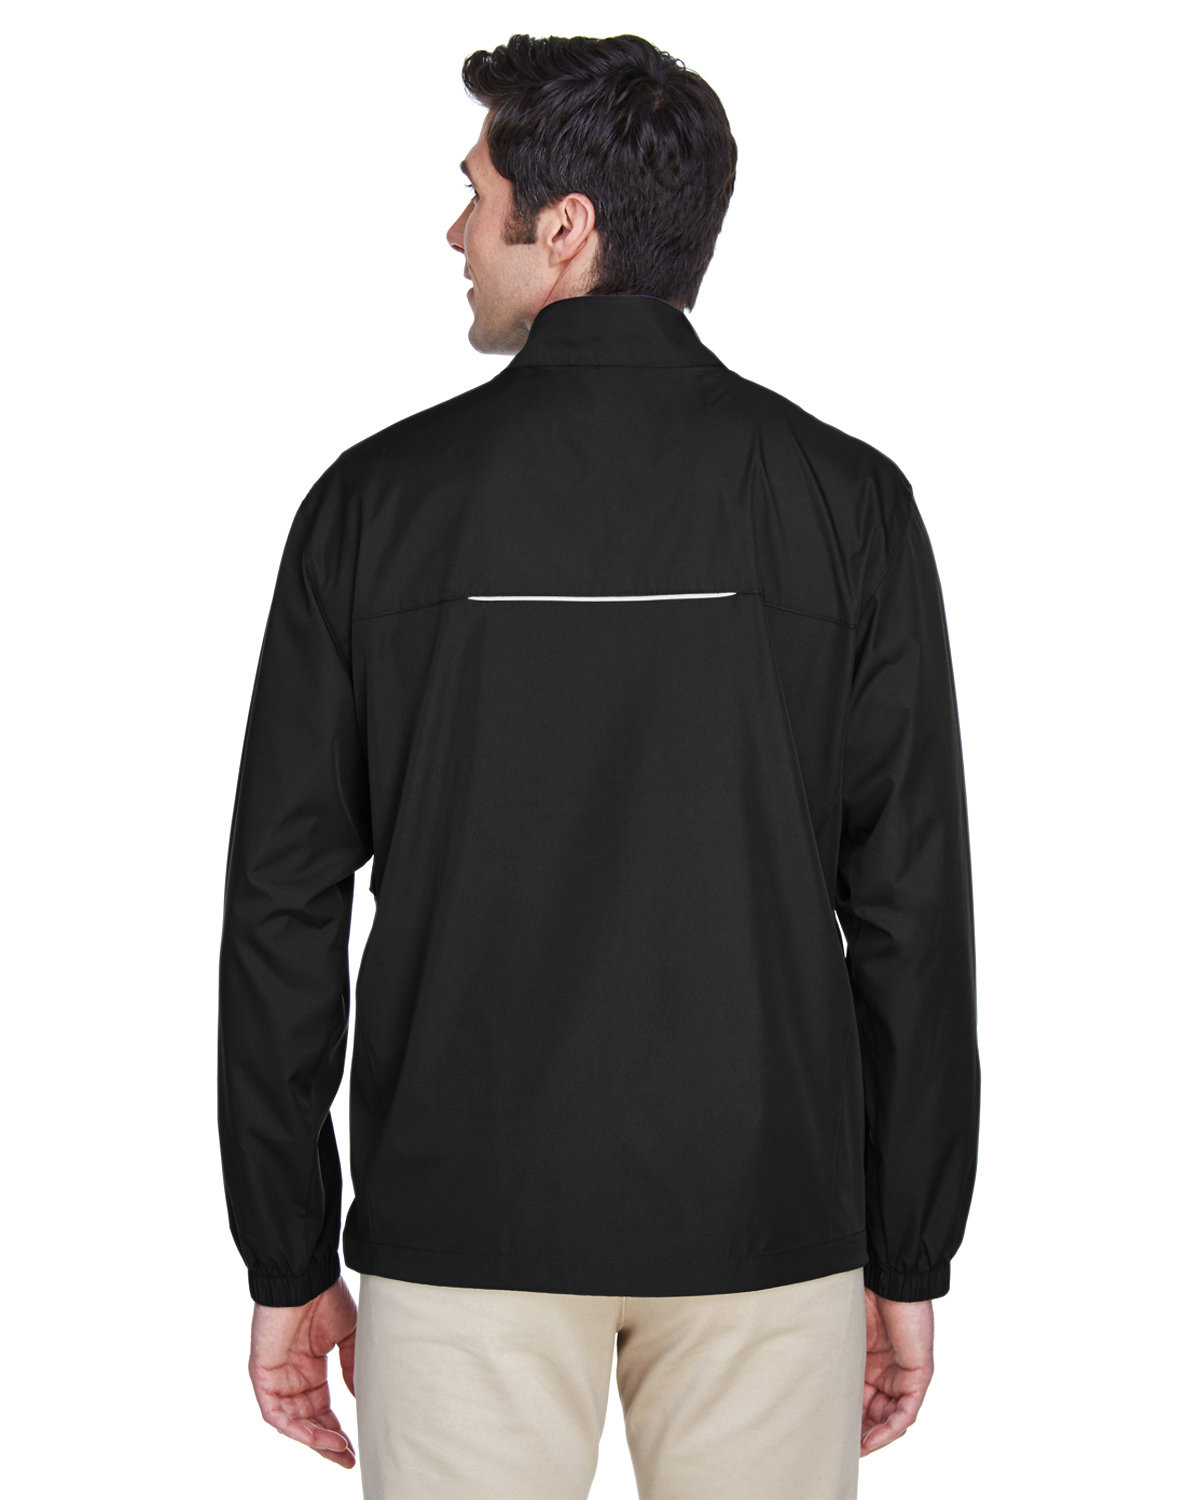 Unlined Lightweight Windbreaker Jacket for Men